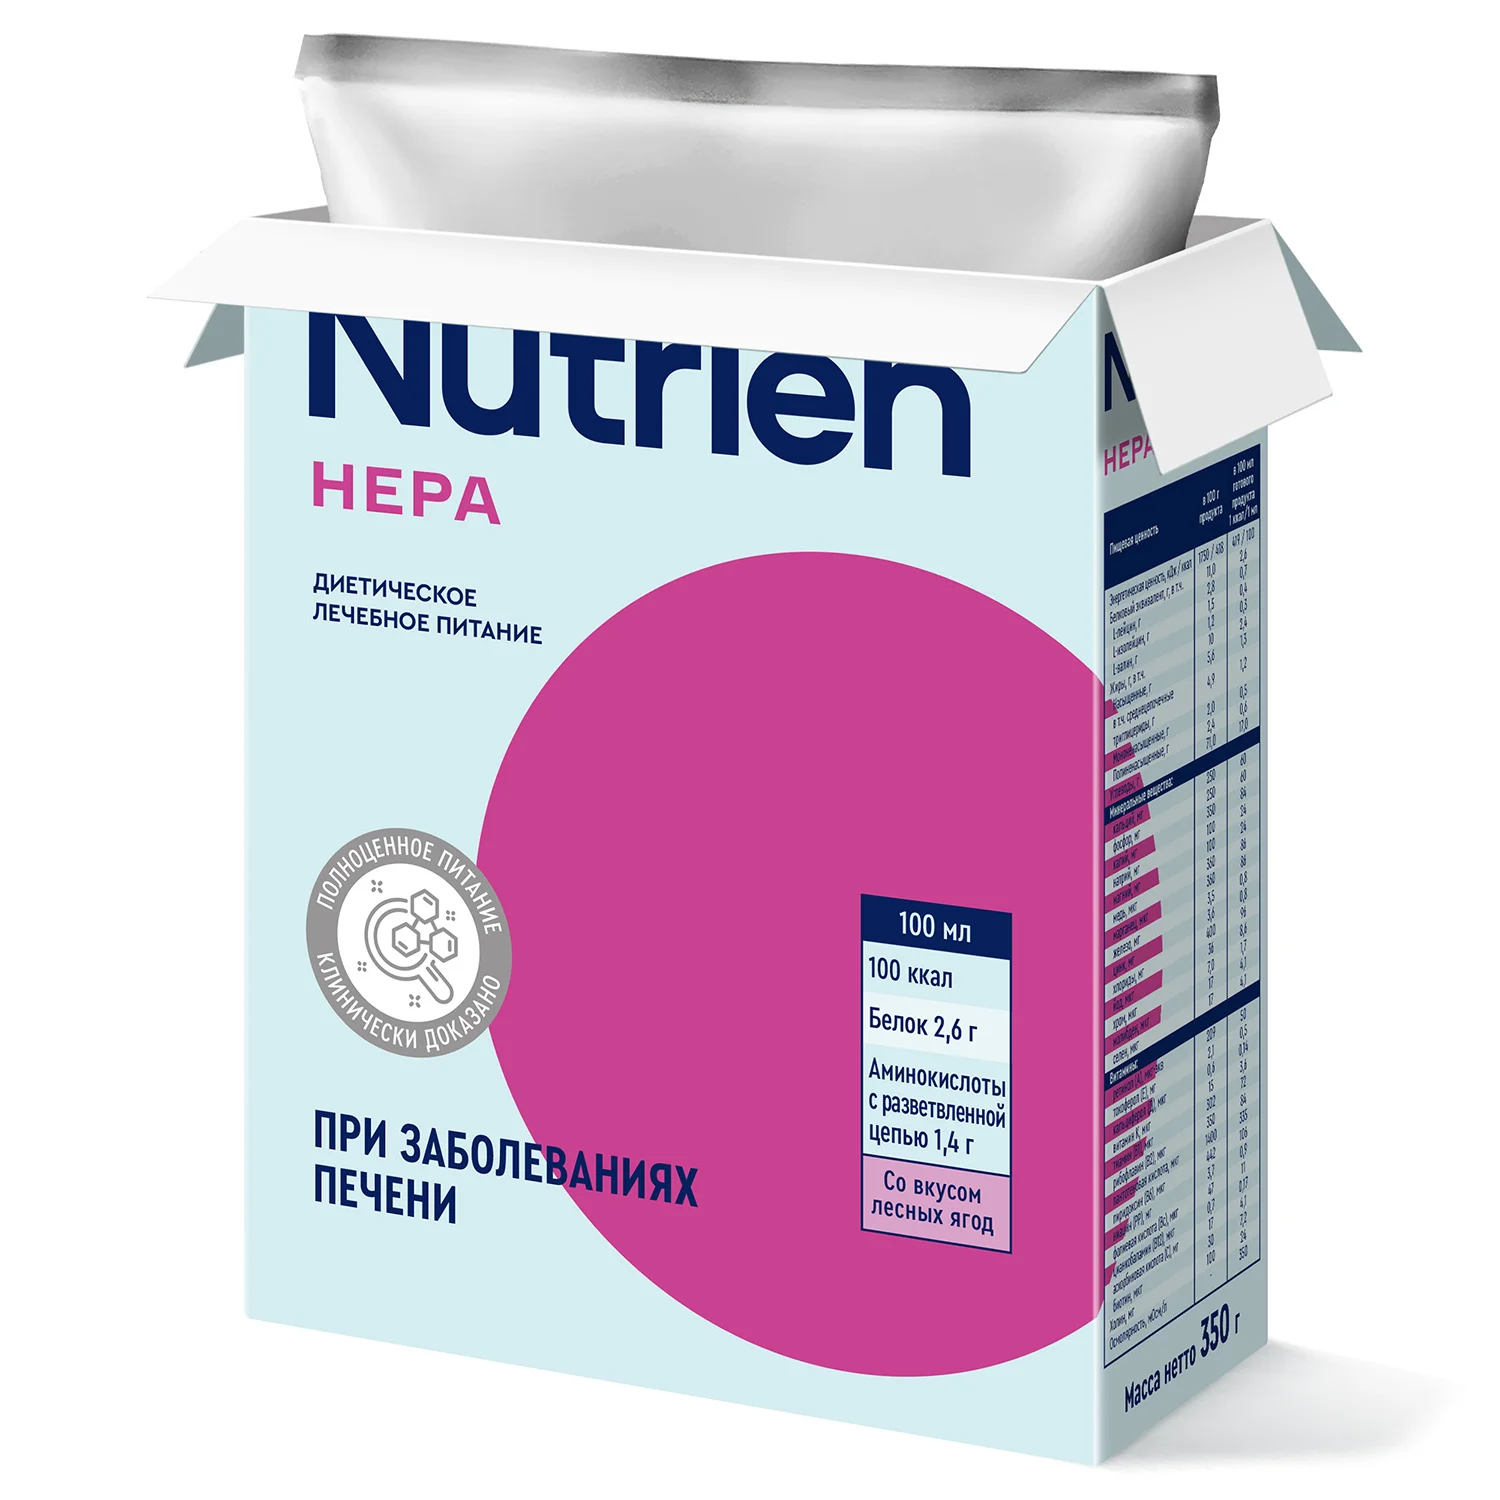 Nutrien Hepa - 7